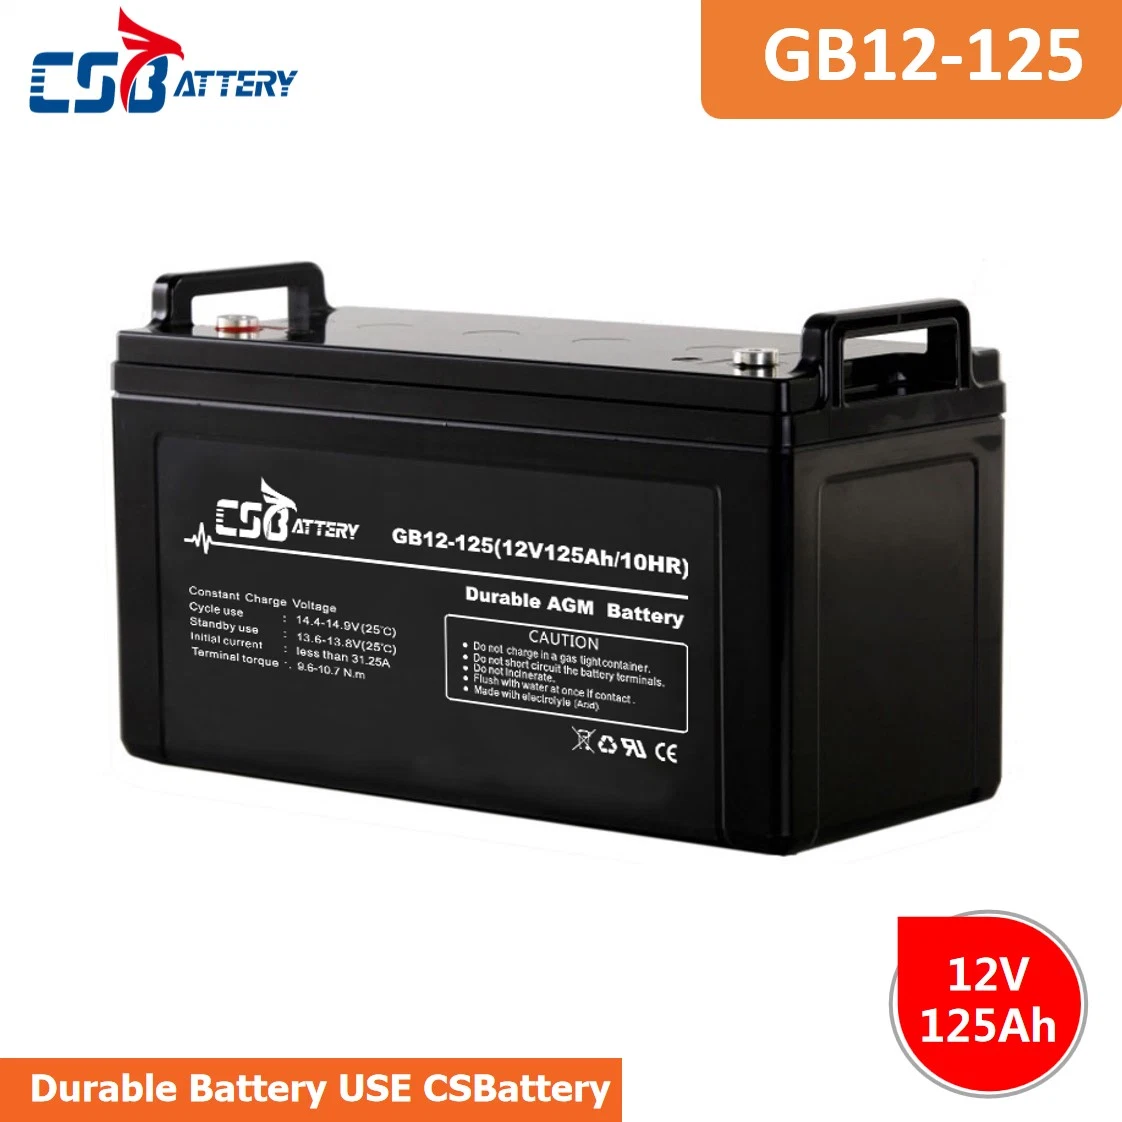 Için CSBattery 12V120ah Bateria Serbest Bakım Kurşun Asit AGM Akü UPS/Elektronik/Güneş - Güç - Sistem/Ada